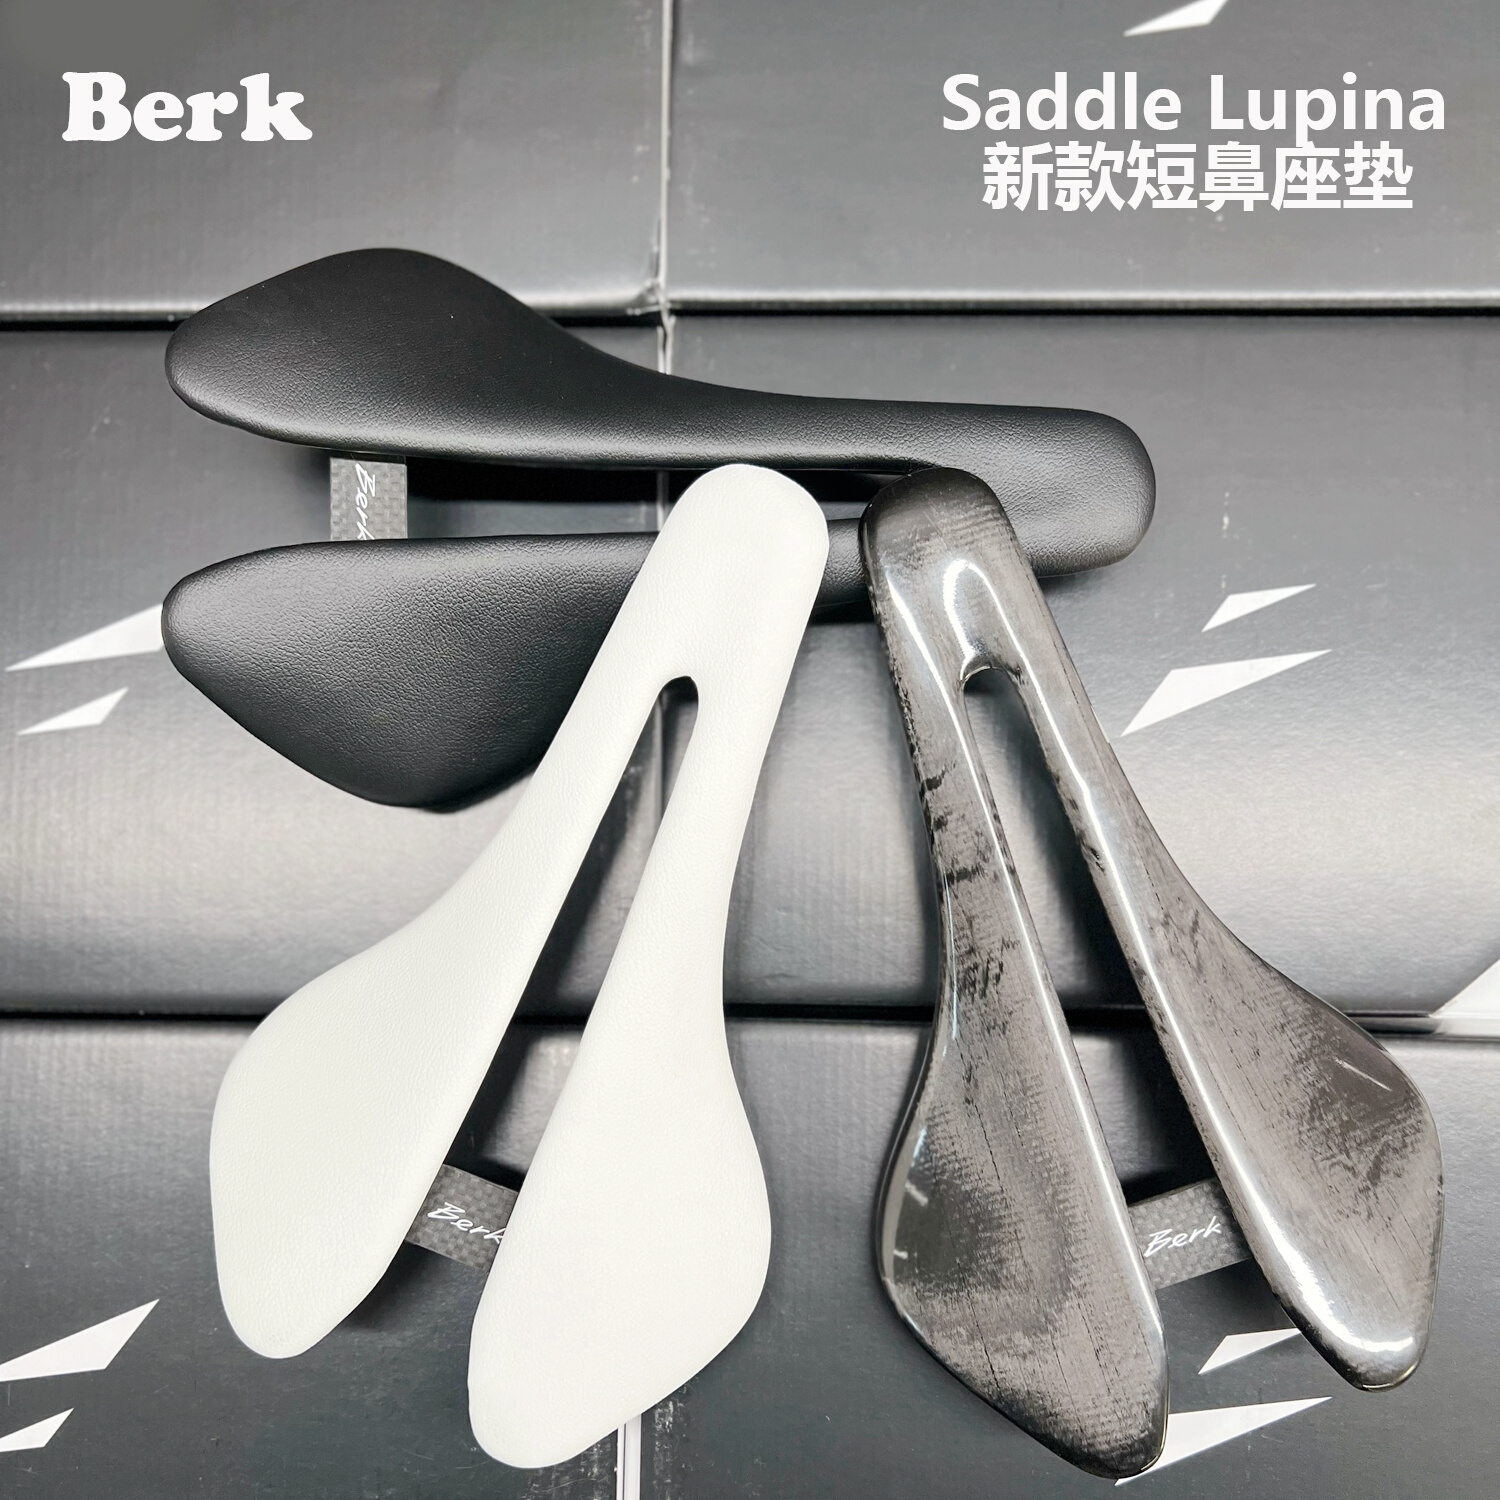 Berk Saddle Lupina新款短鼻手工超轻碳纤维小布公路自行车坐垫 自行车/骑行装备/零配件 坐垫/鞍座 原图主图